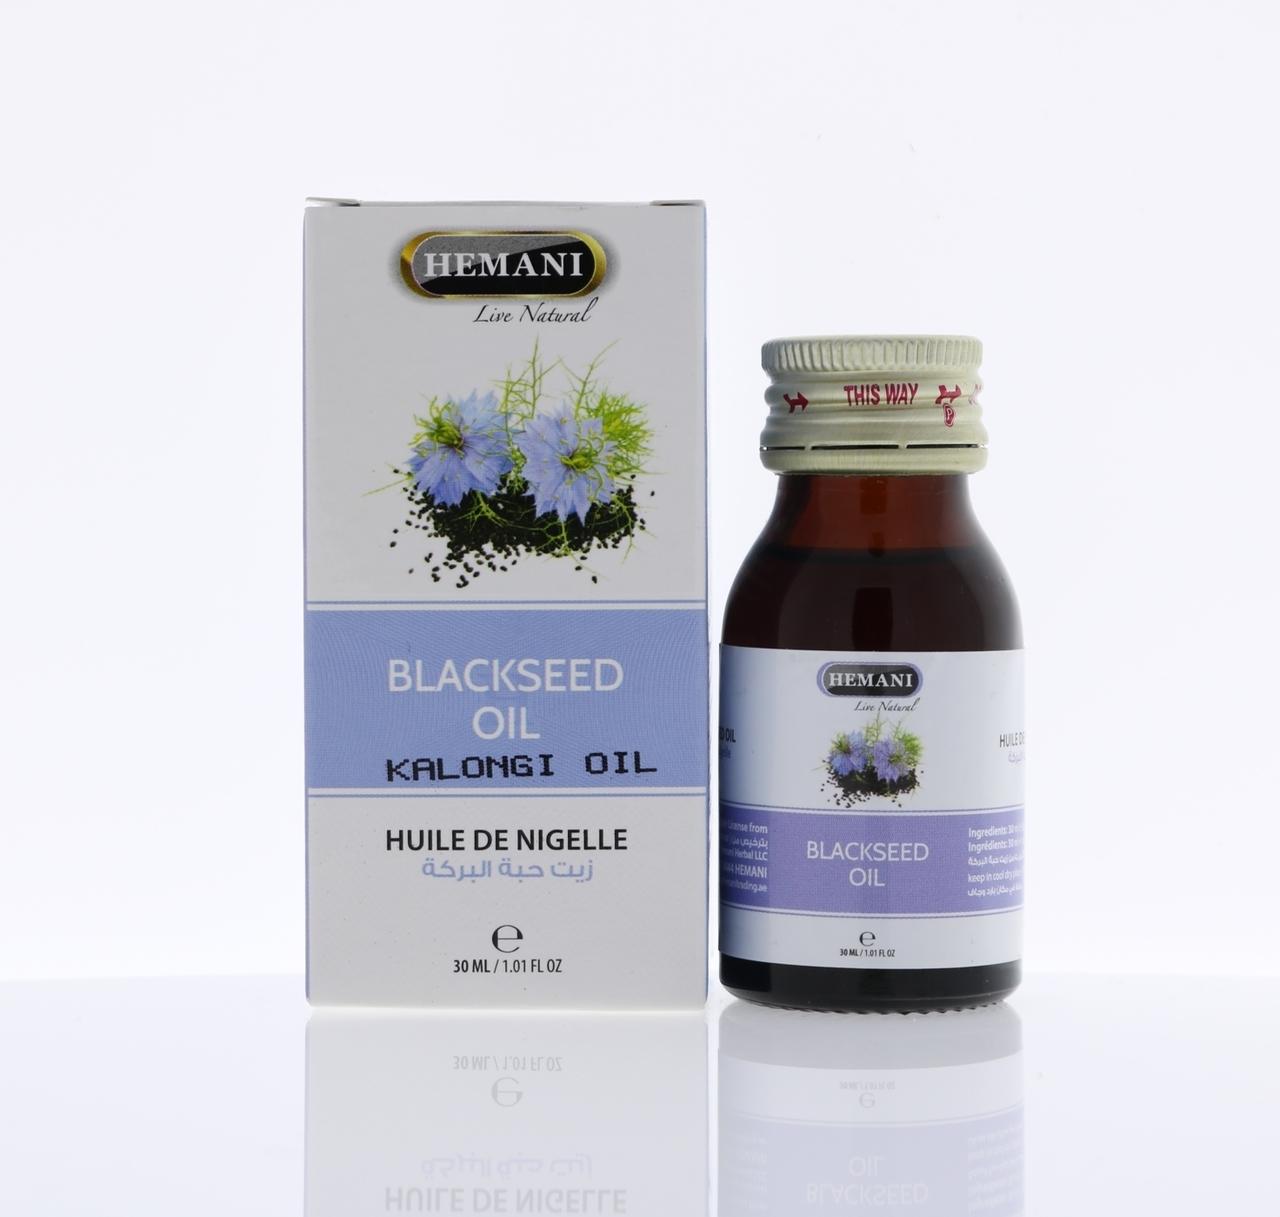  Hemani Black Seed Oil 30ml